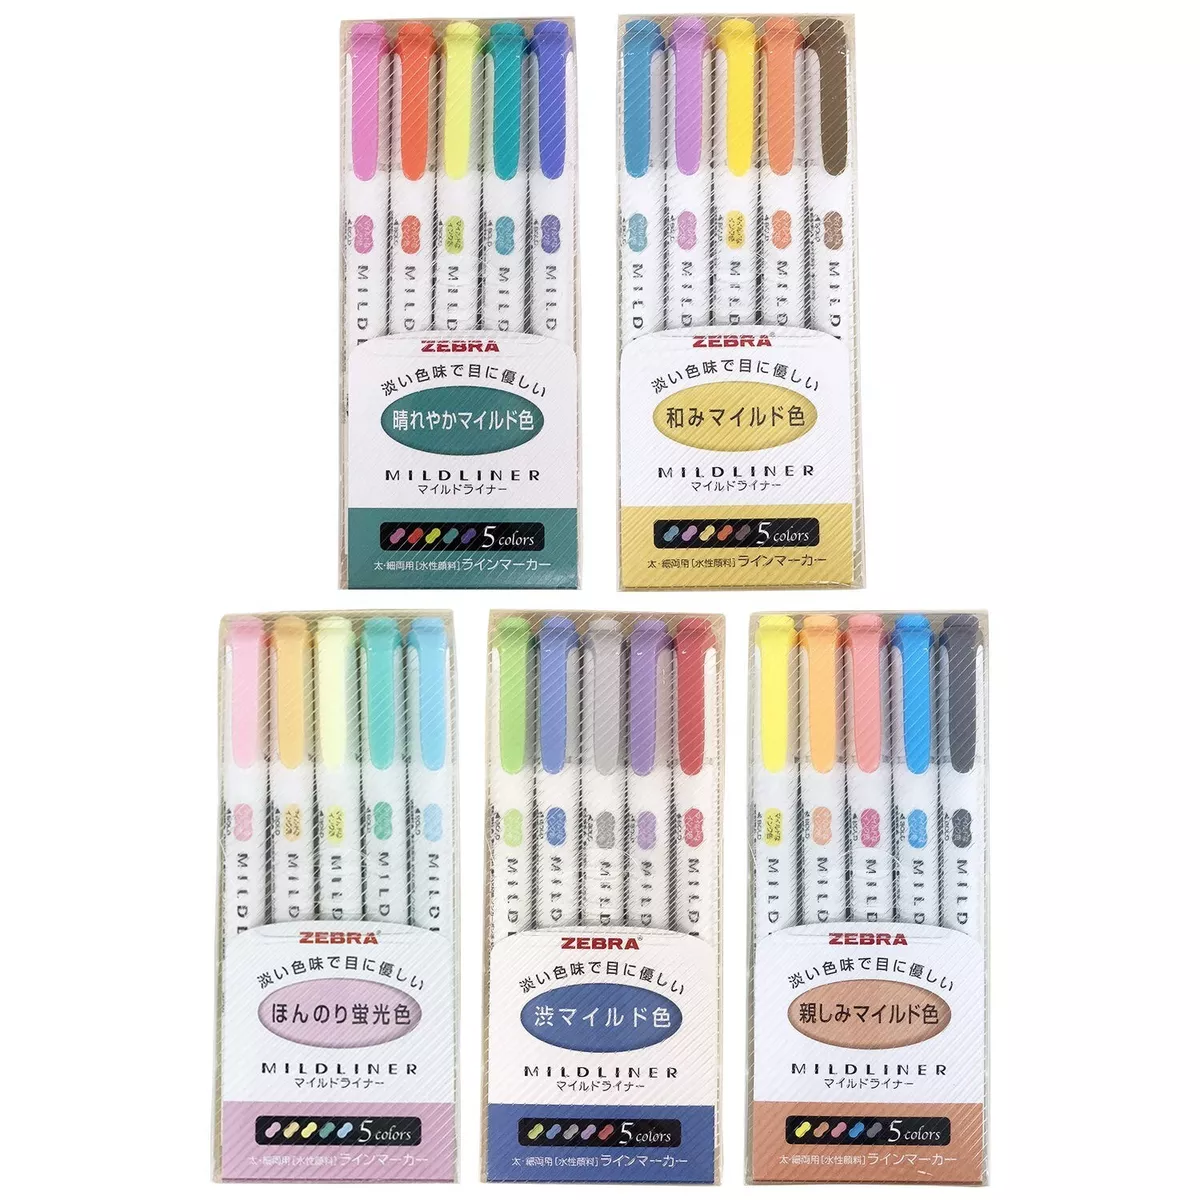 Zebra Mildliner highlighter pen set, 25 Pastel Color set (Count) (Count)  (Cou